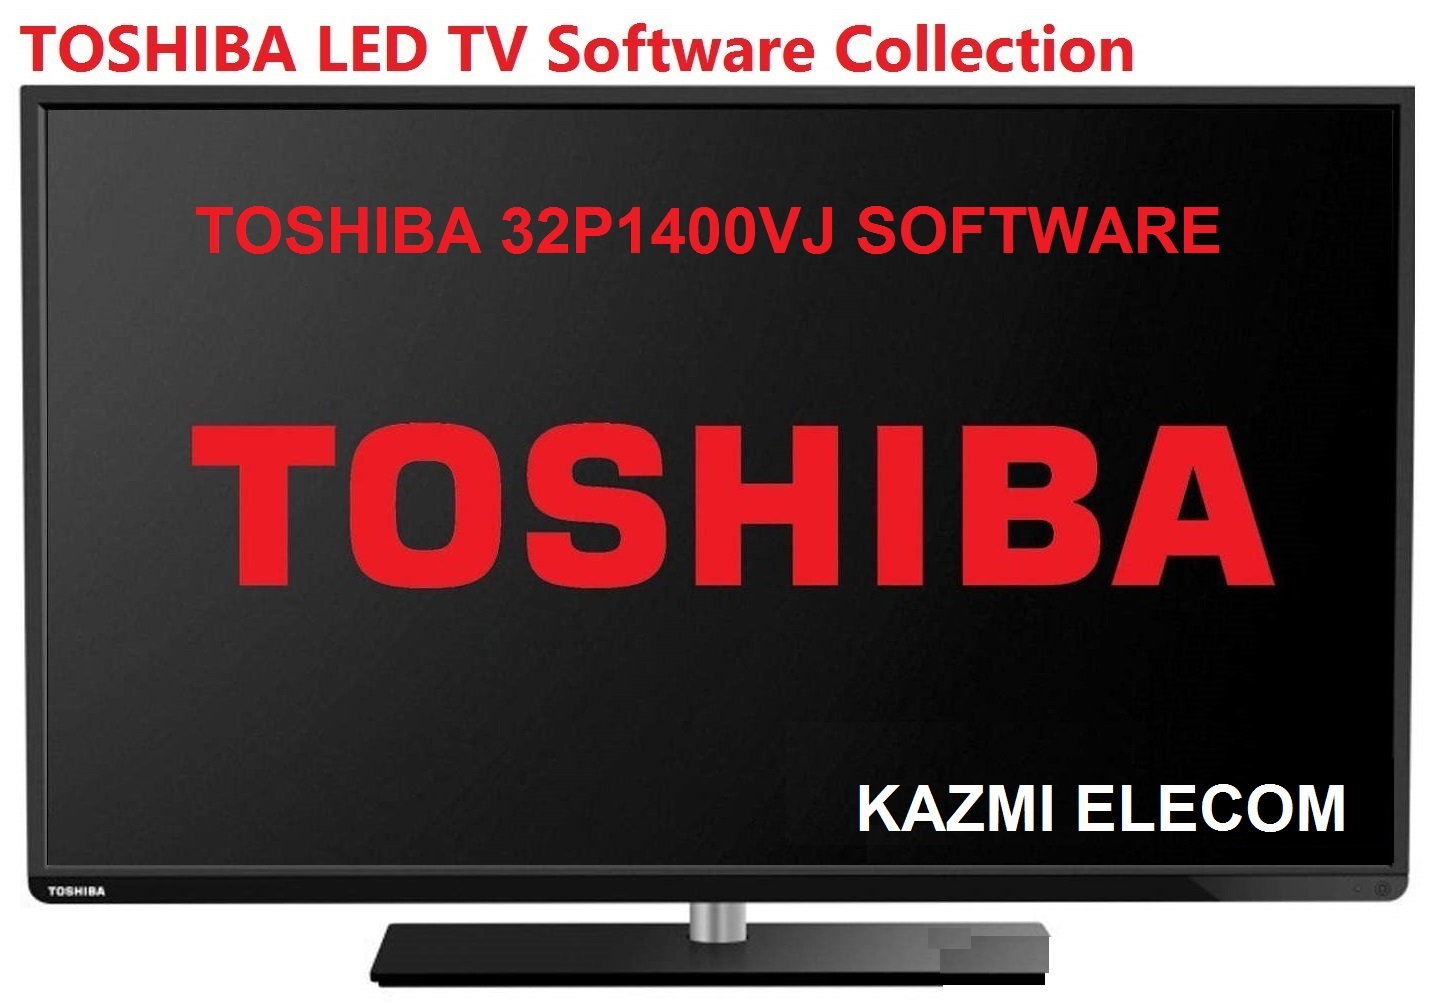 Toshiba 32P1400Vj